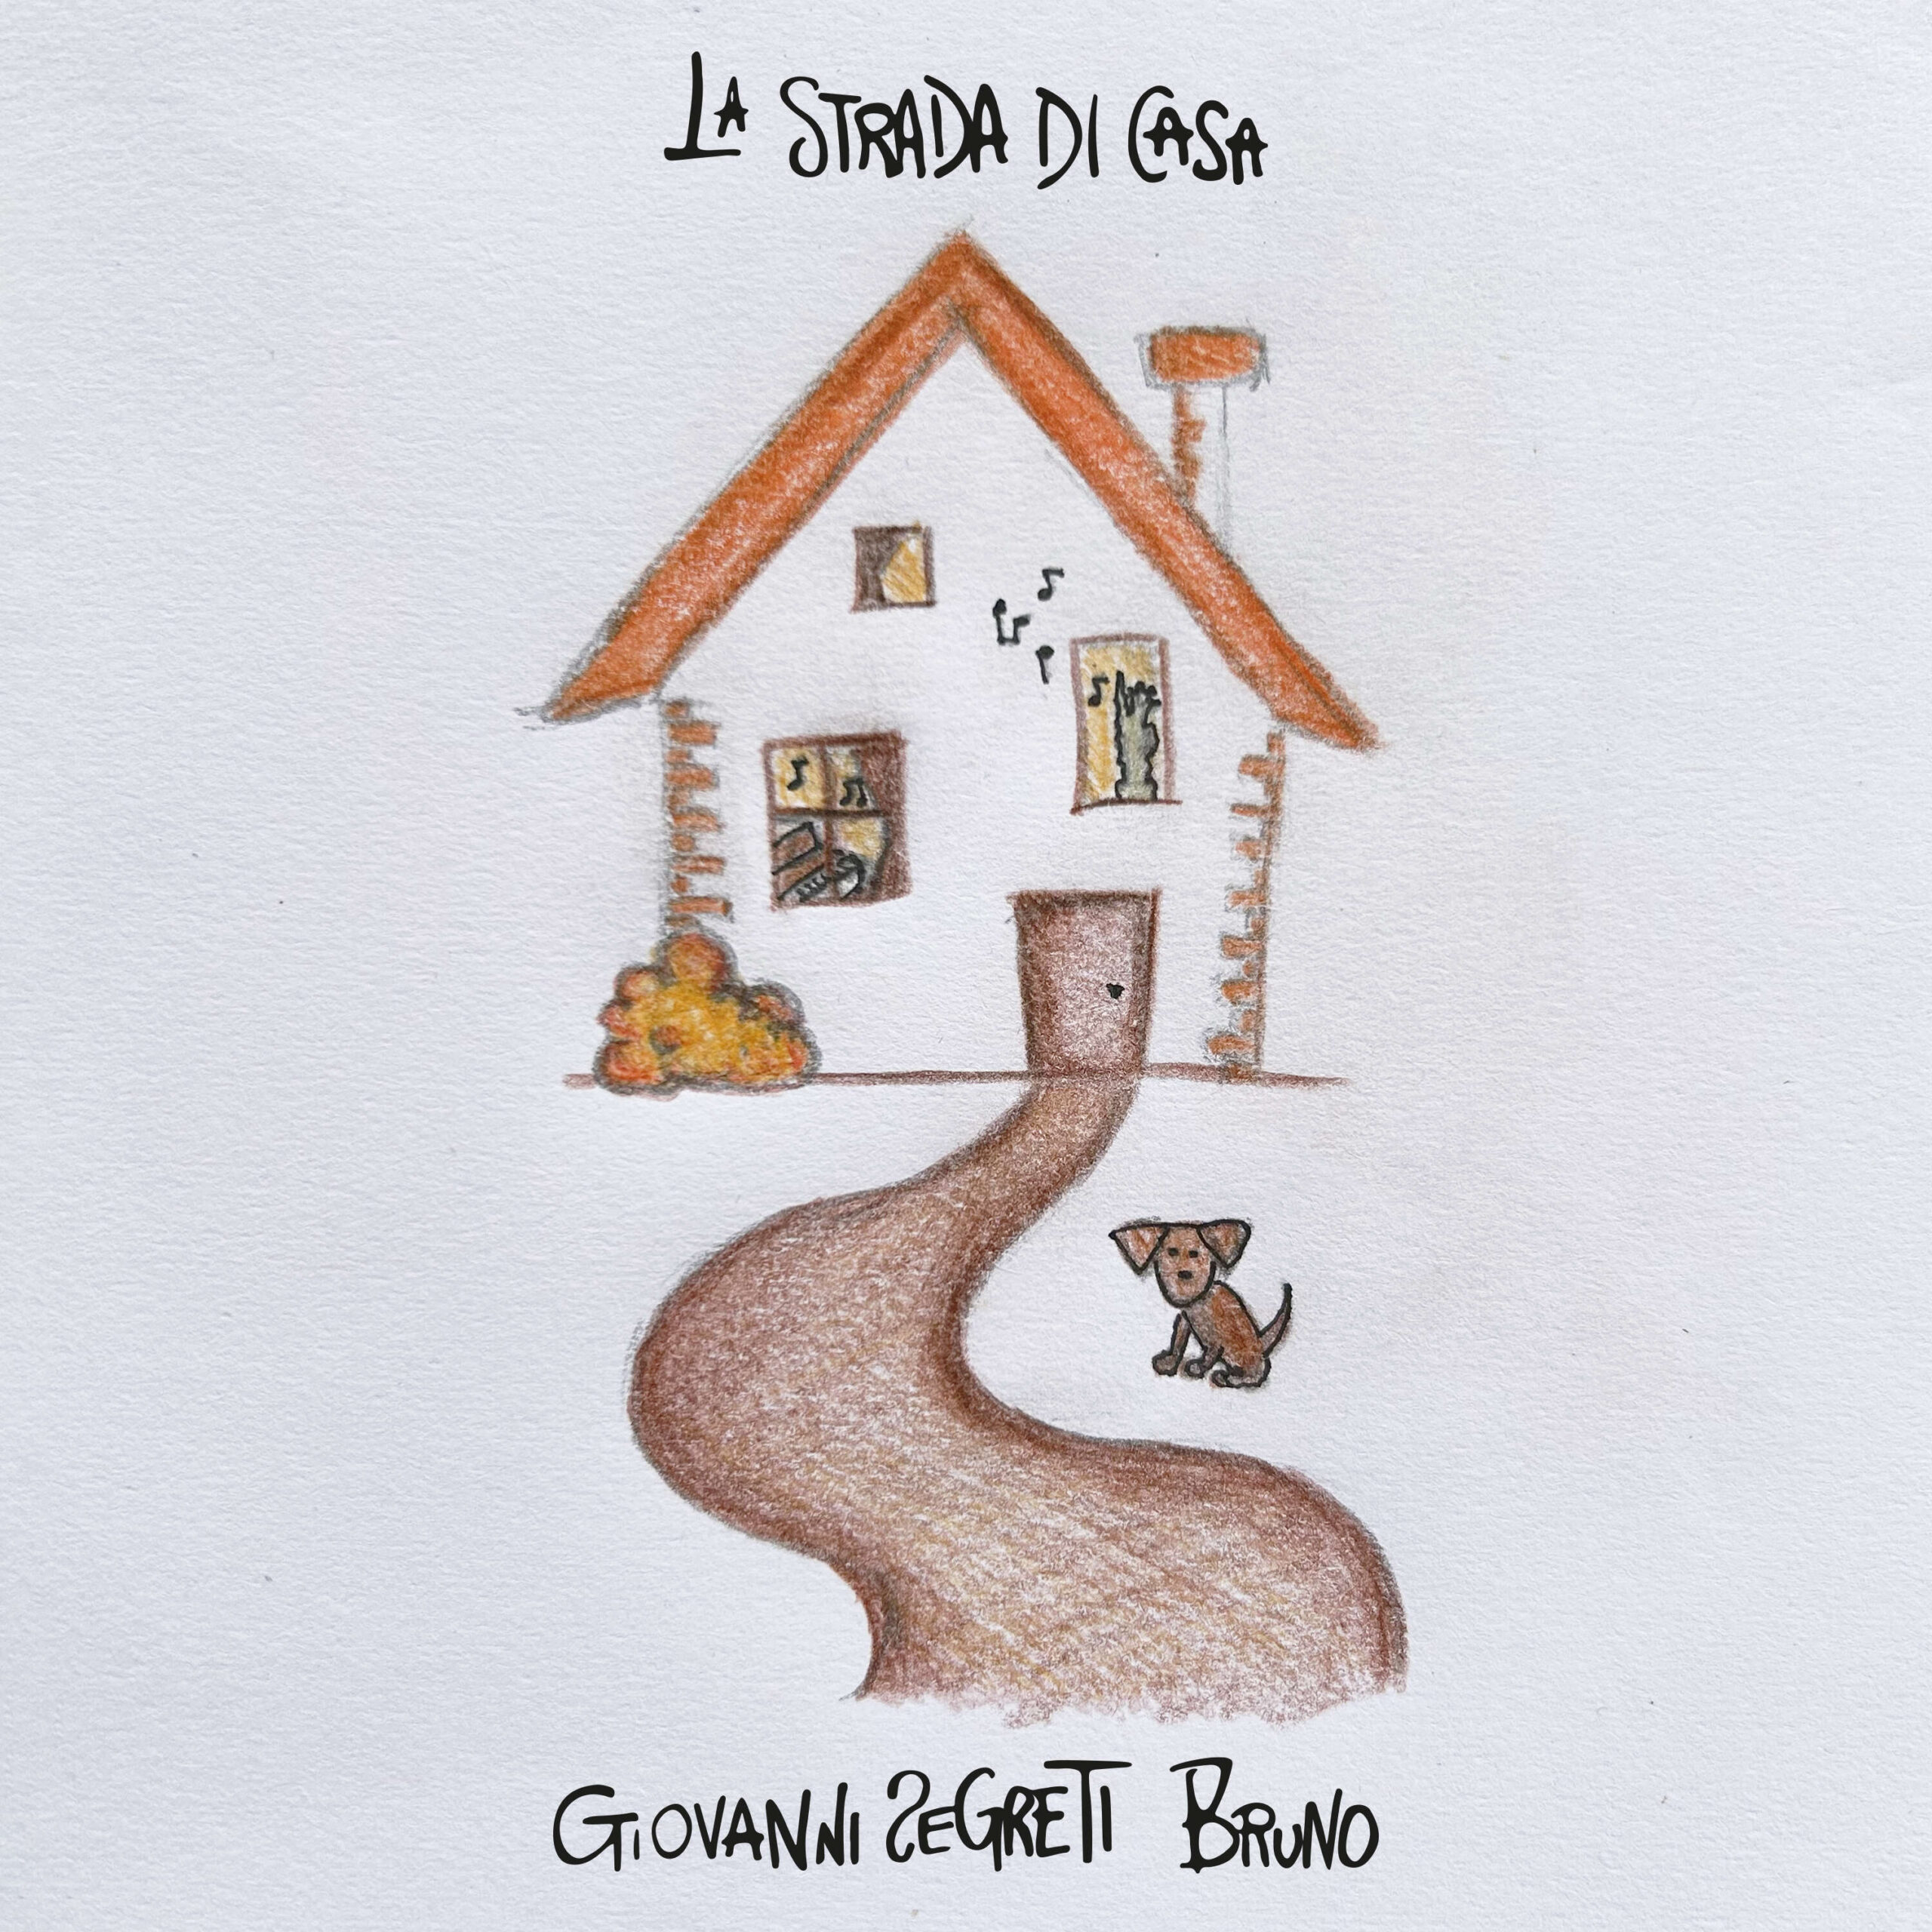 Giovanni Segreti: “La strada di casa” è il nuovo singolo